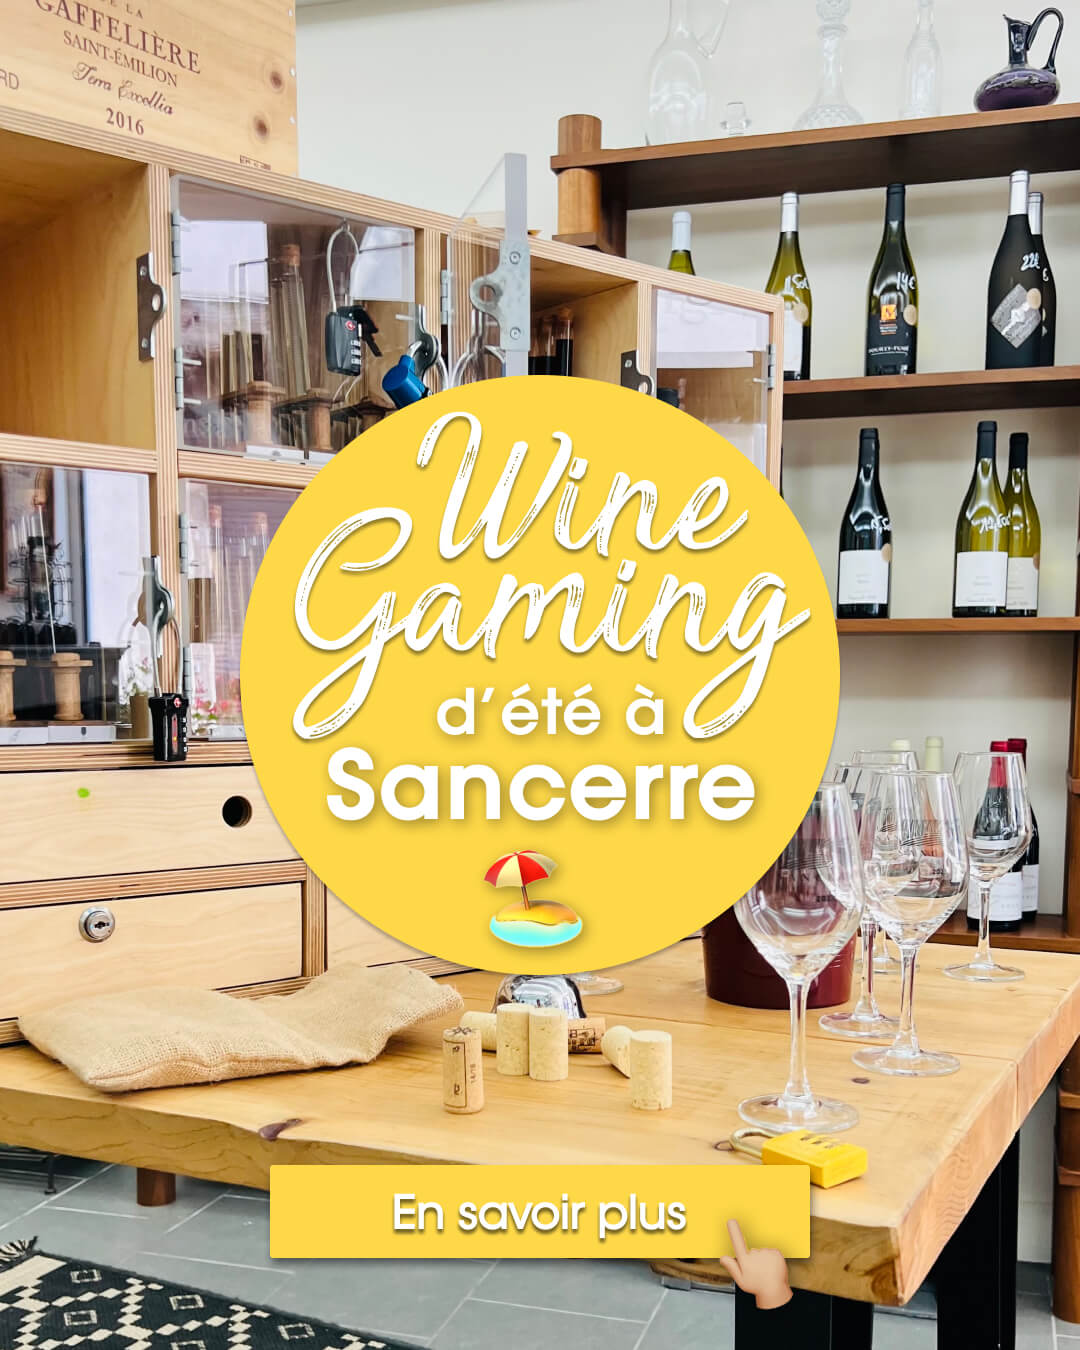 Cliquez sur l'image pour découvrir le Wine Gaming d'été, disponible à Sancerre chez VUE sur Vignes, vinothèque ultra-écoresponsable tenue par Raphaël Guillou.